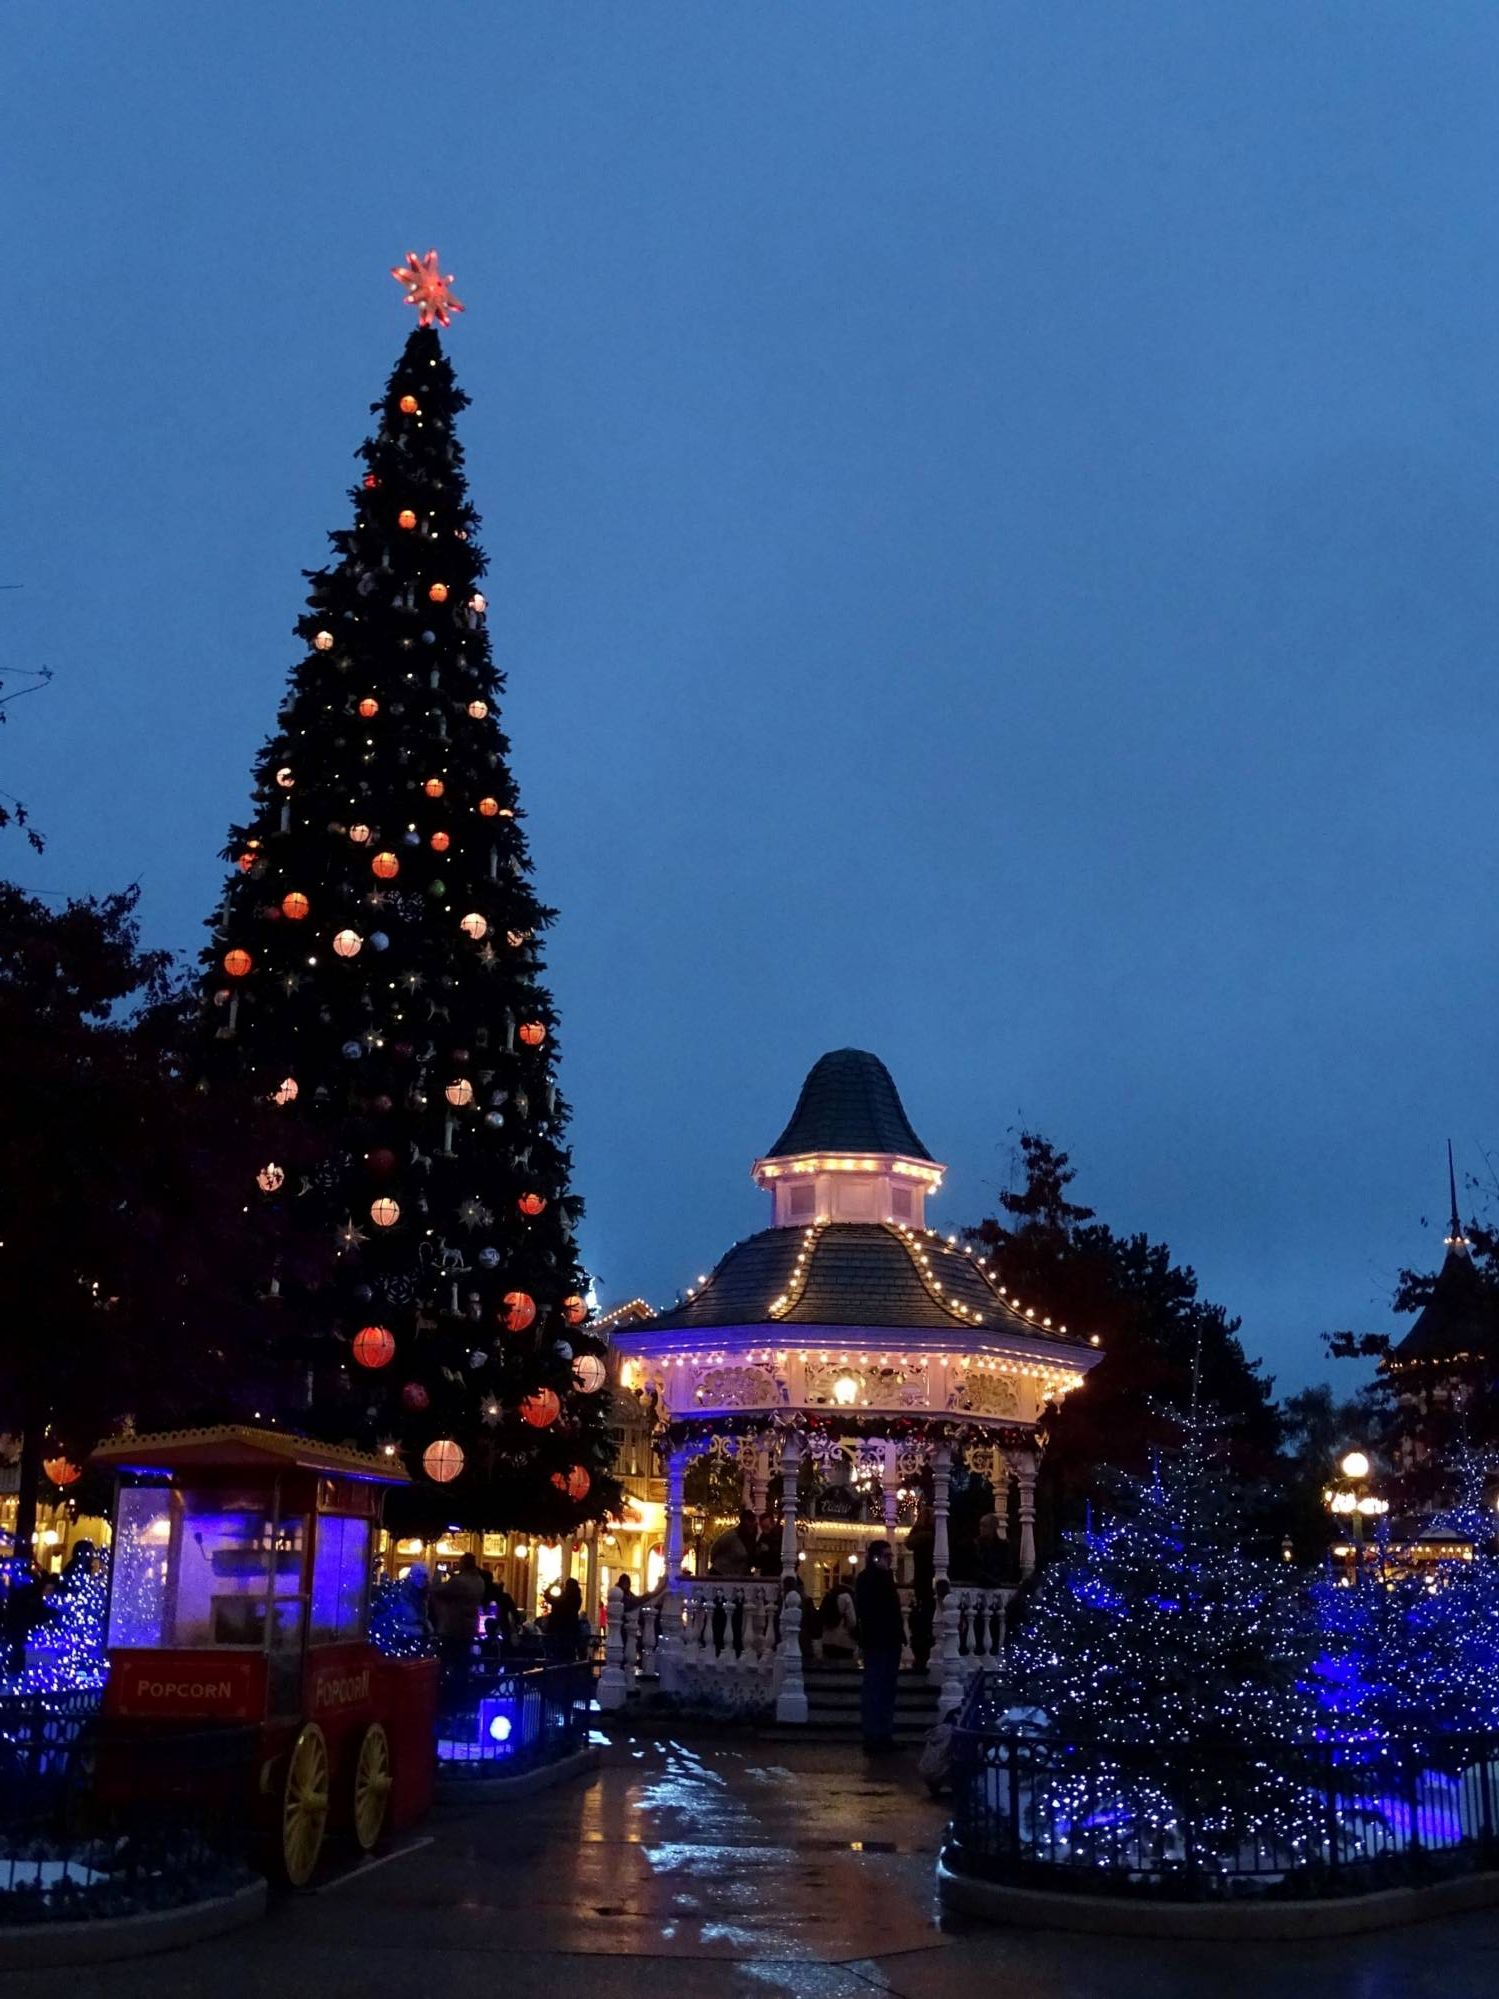 Disneyland Paris - Christmas tree